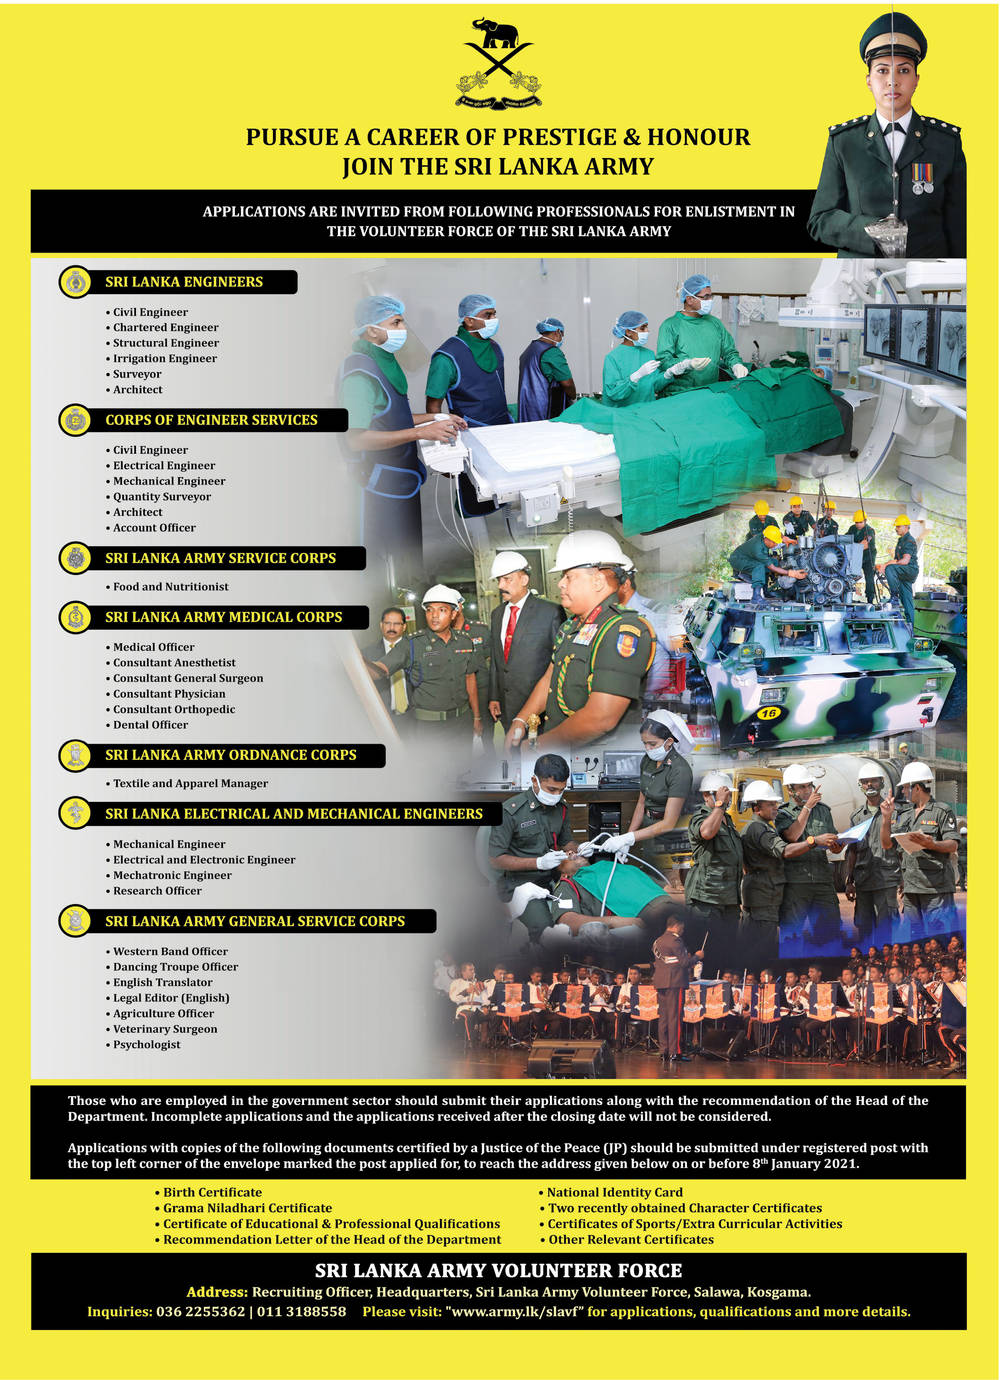 Sri Lanka Army Volunteer Force Vacancies 